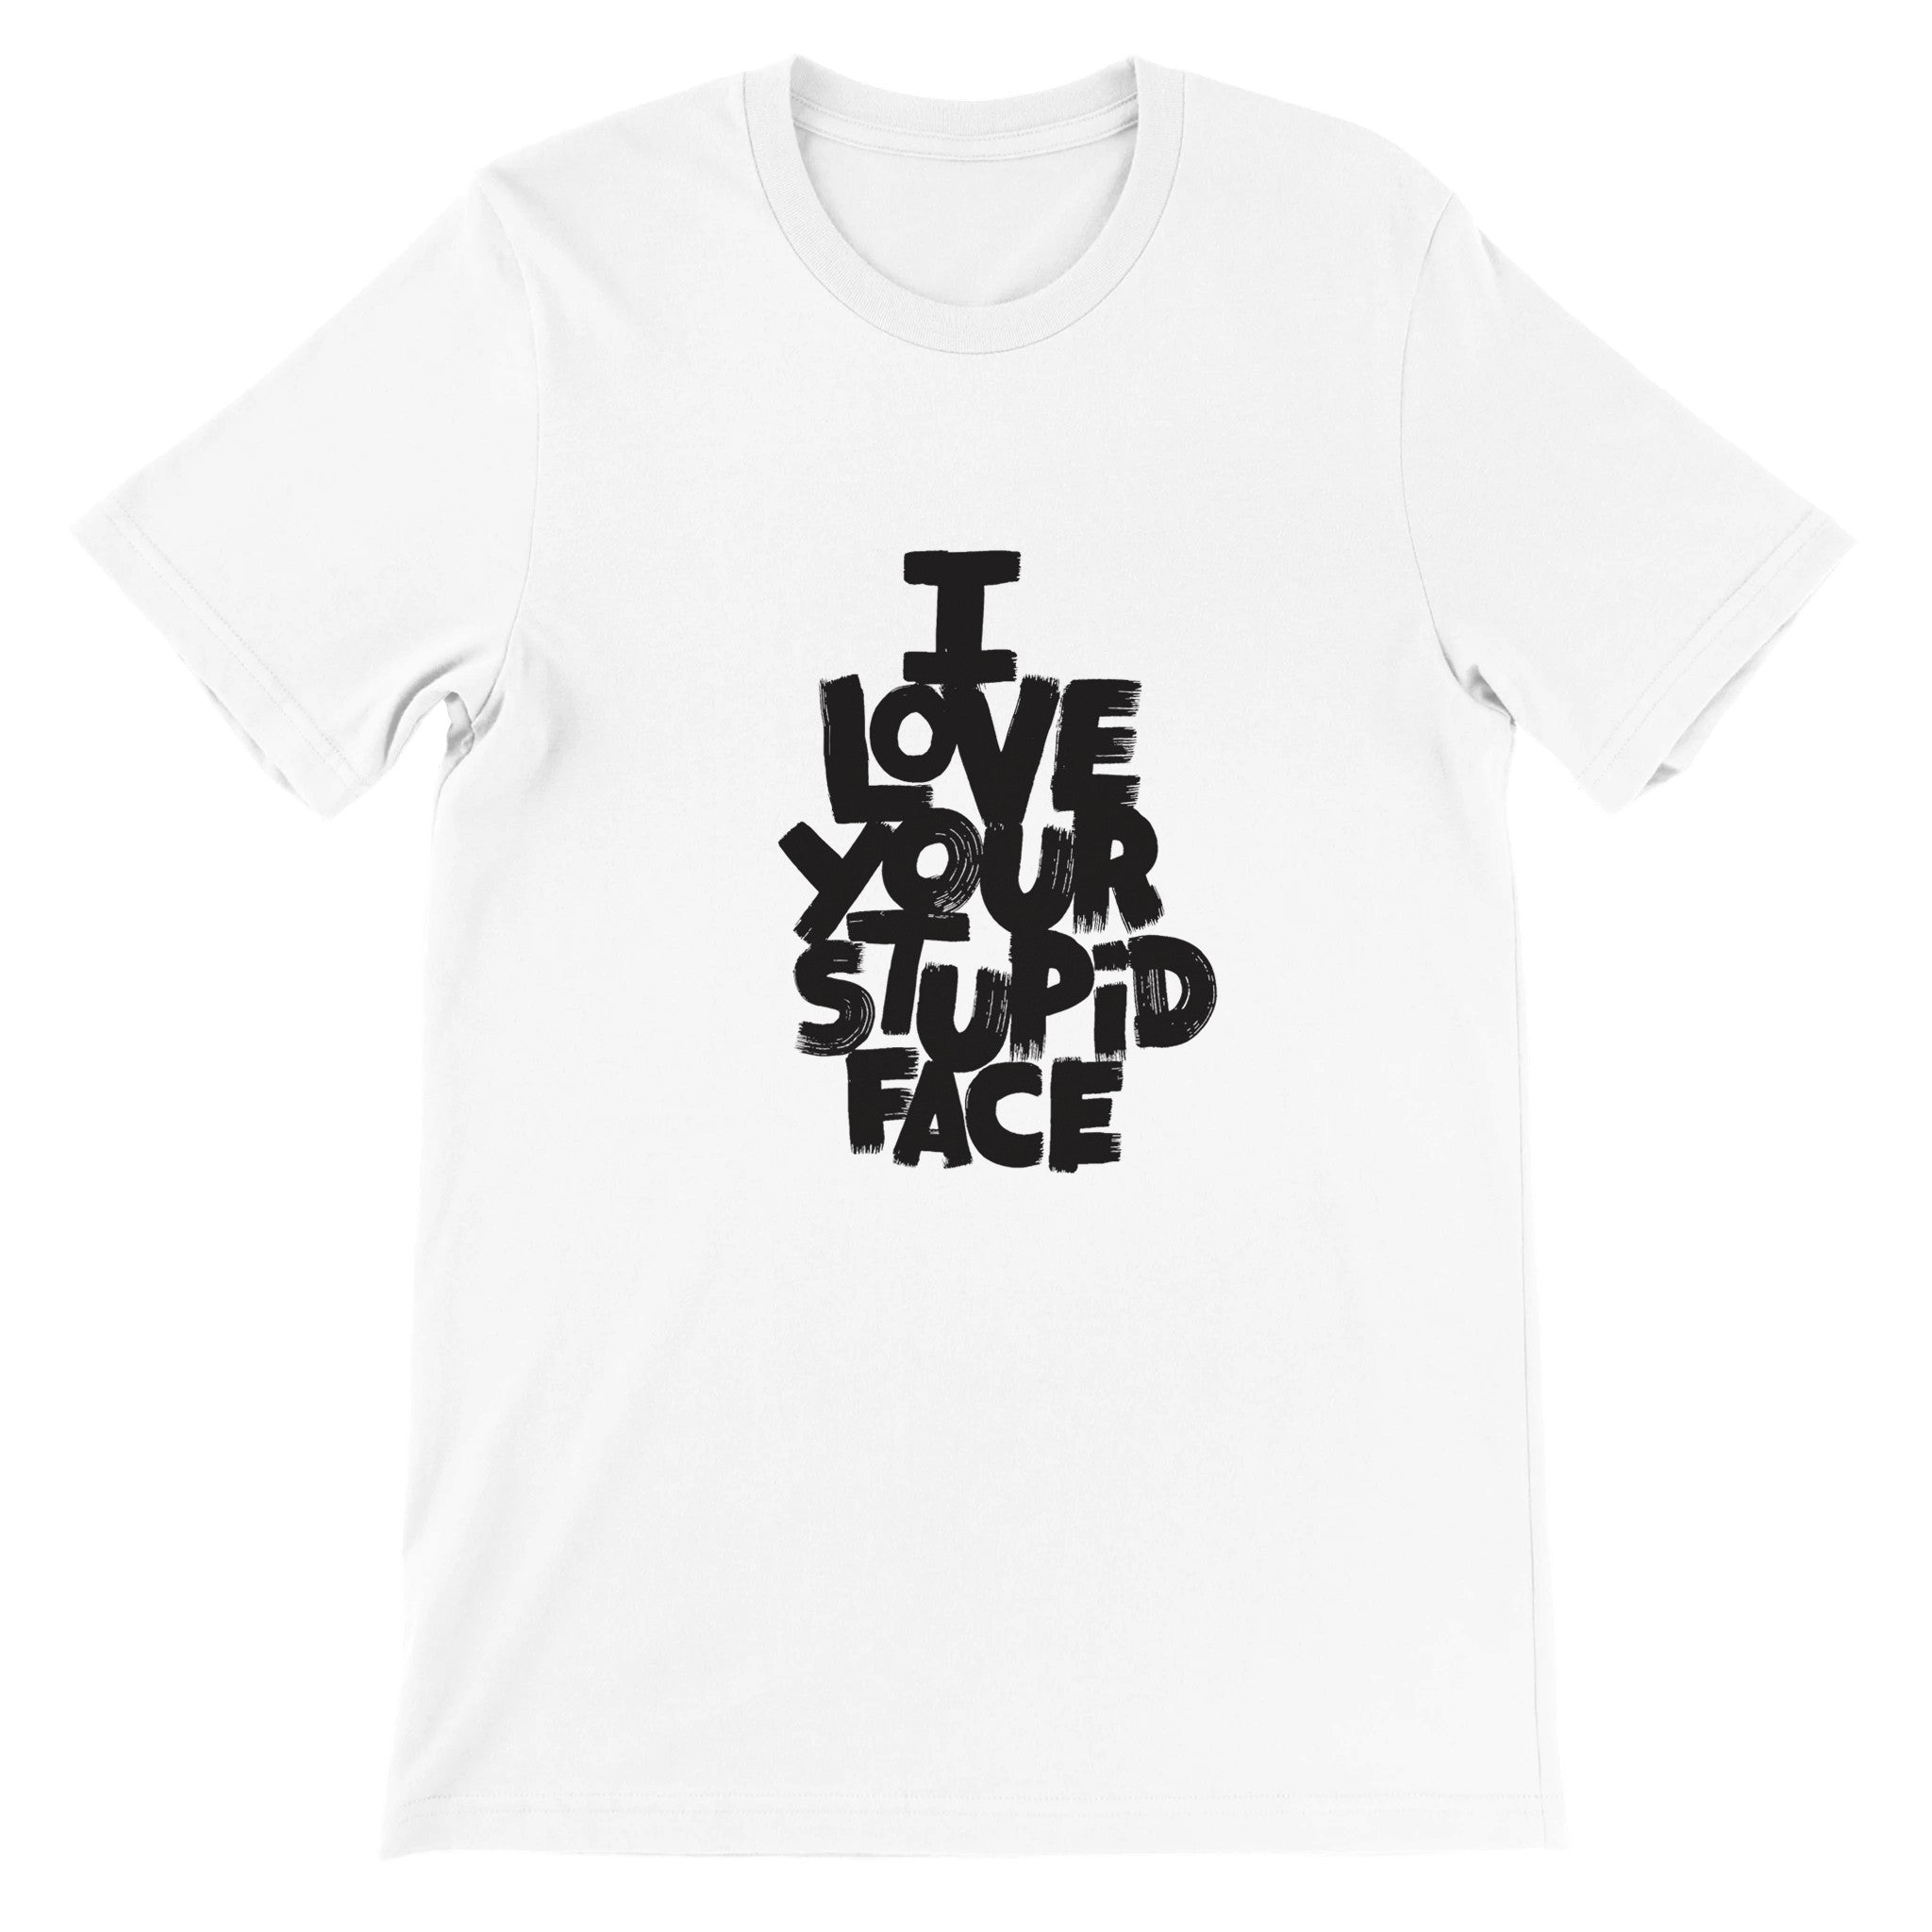 Love Your Stupid Face Crewneck T-shirt - Optimalprint